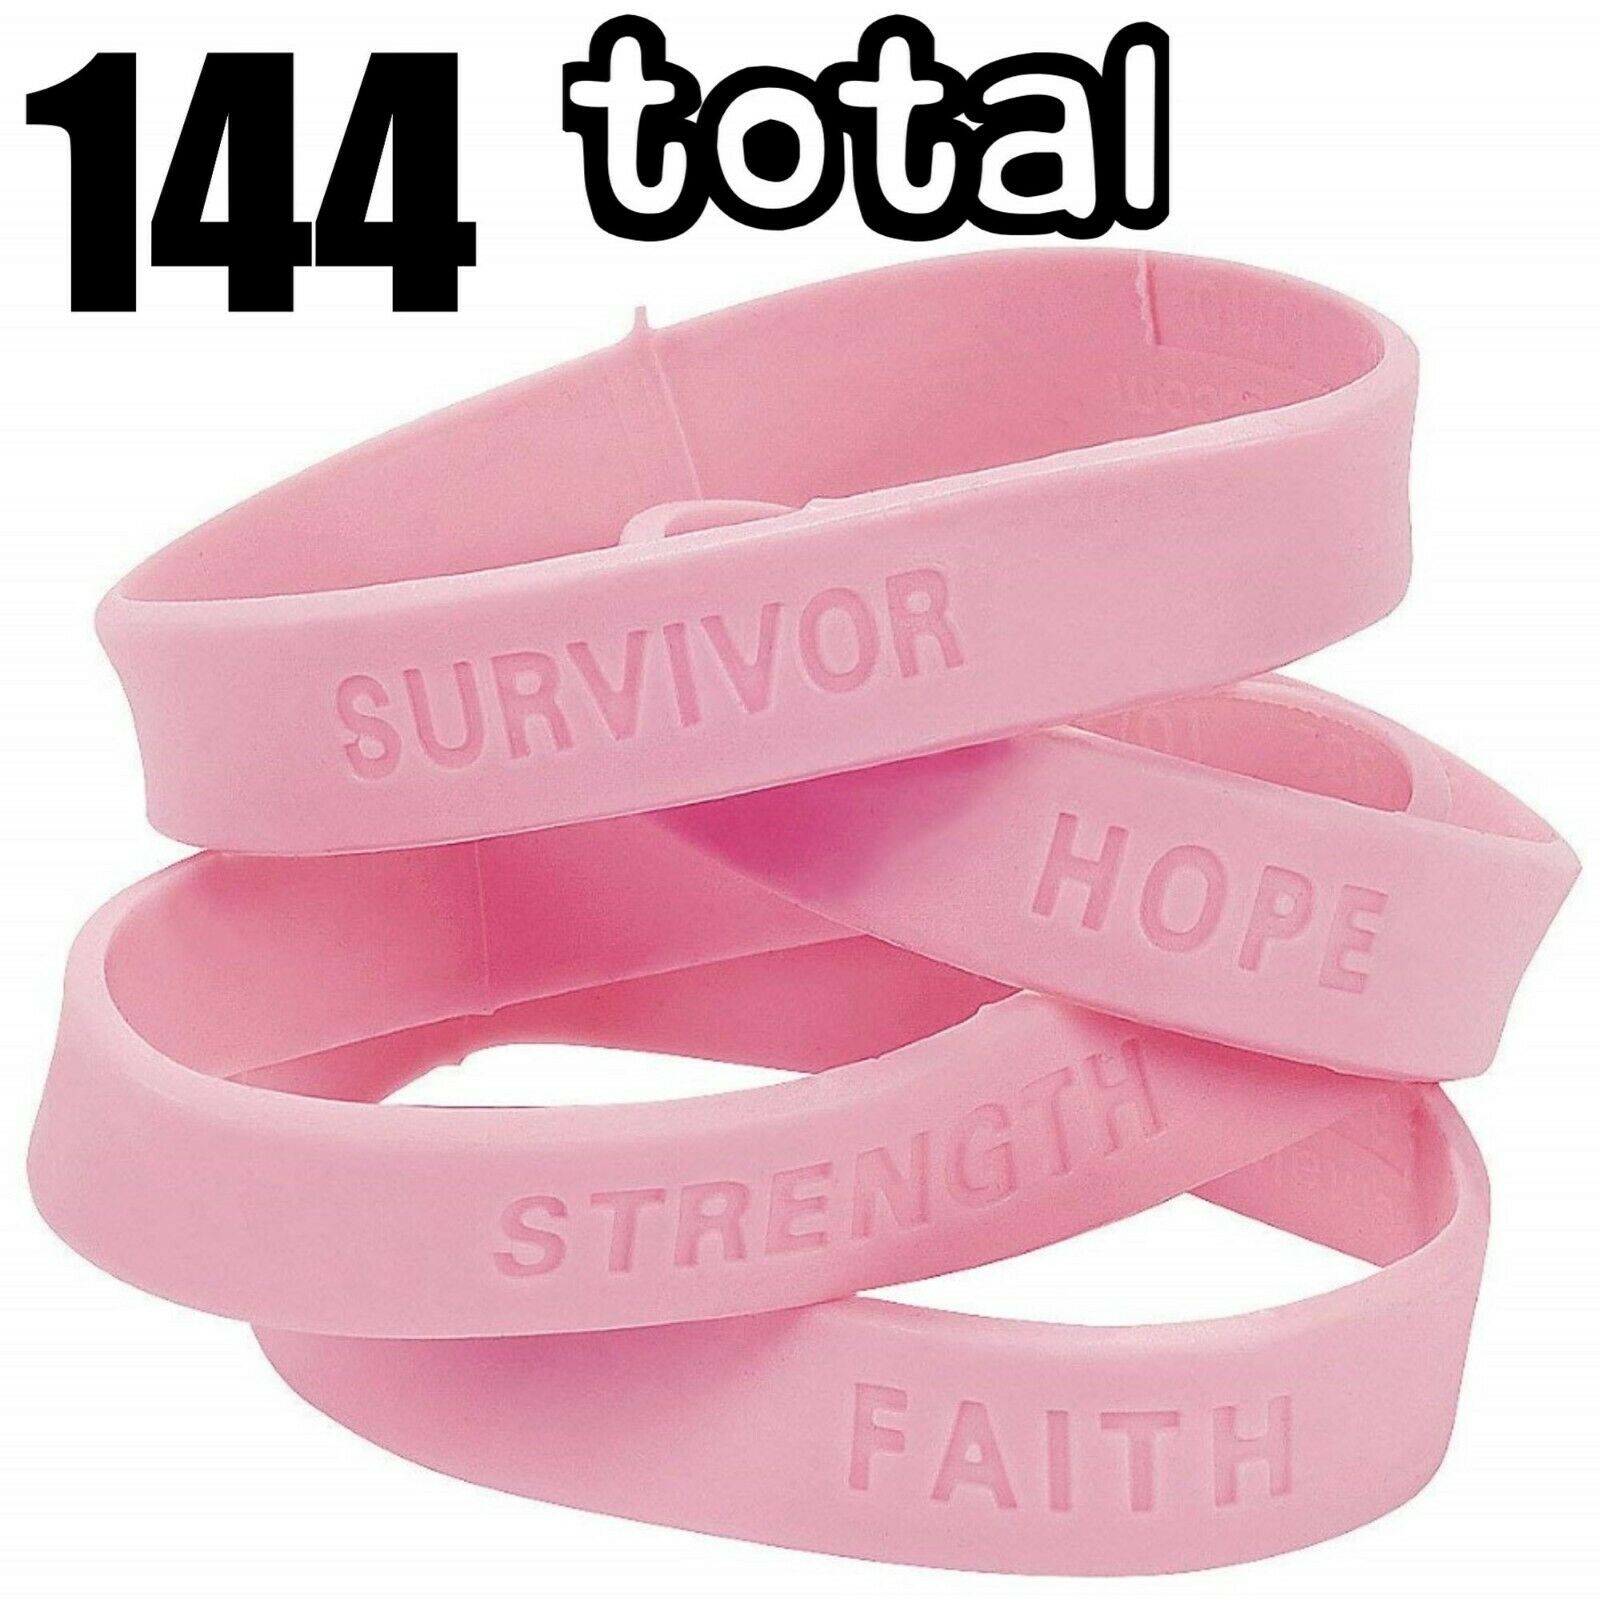 144 Breast Cancer Awareness Pink Bracelets ~ Wholesale  (12 Dozen)